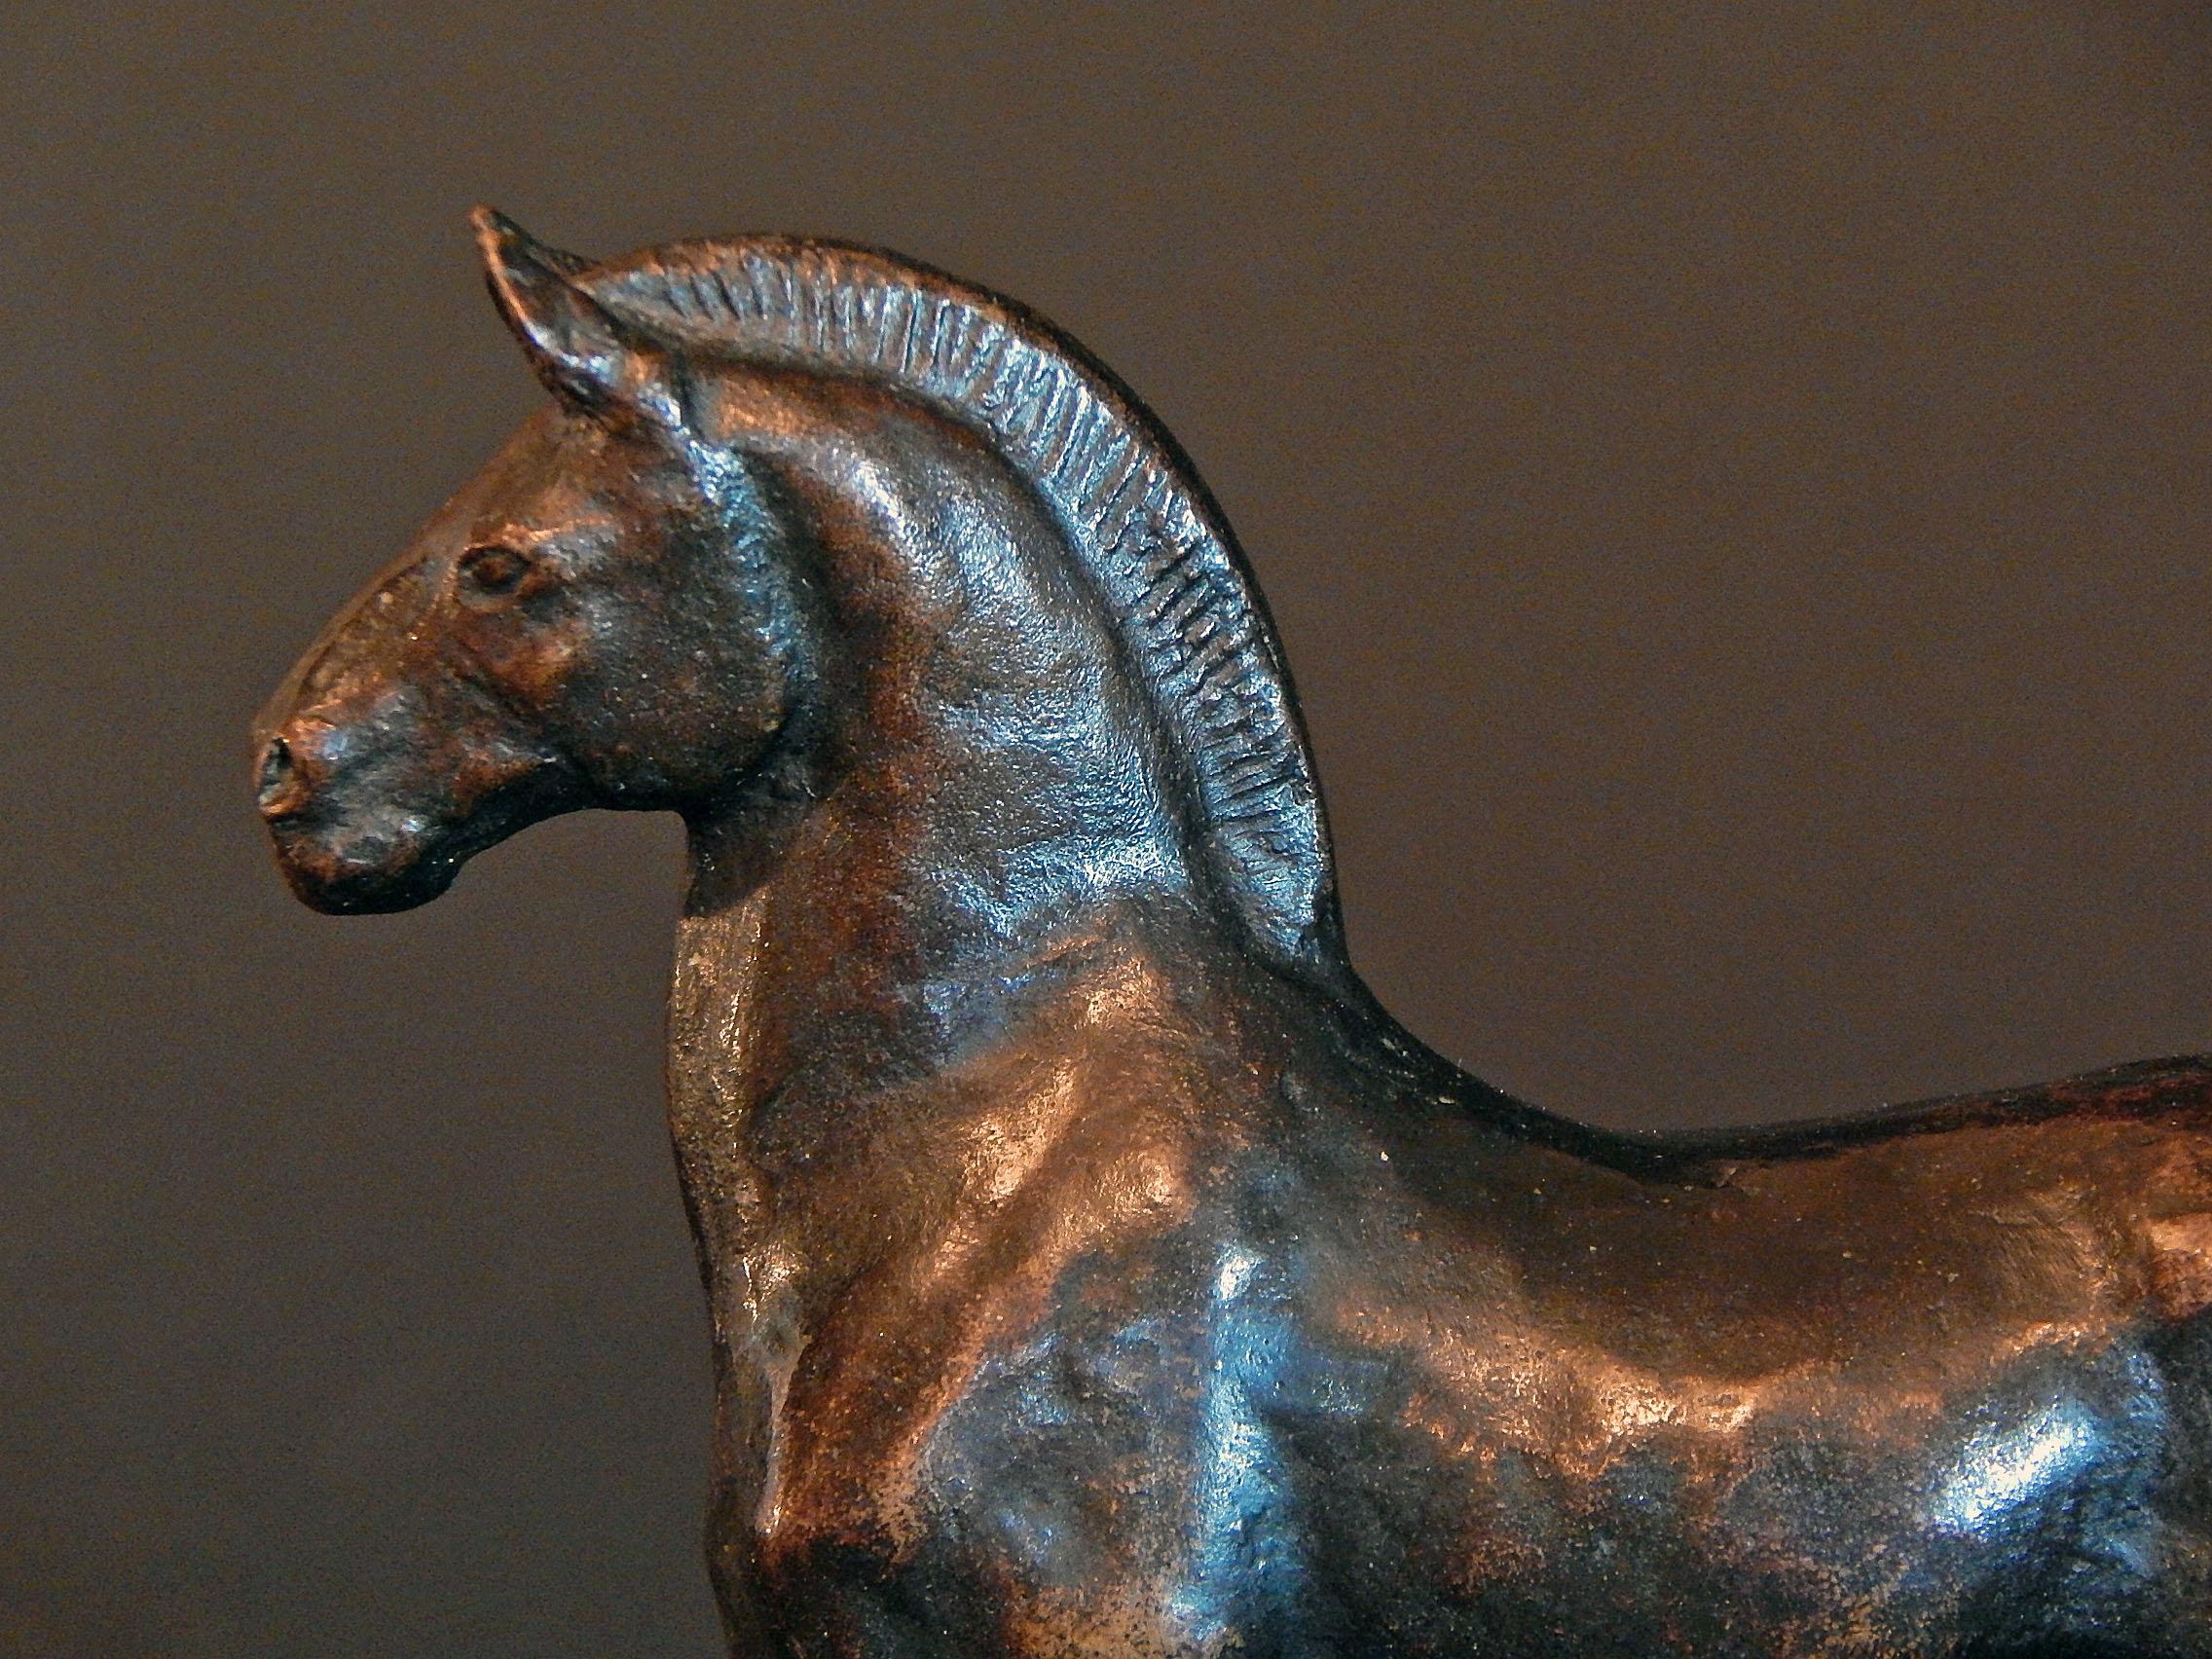 Seltene und schöne Bronzeskulptur eines stehenden Pferdes 